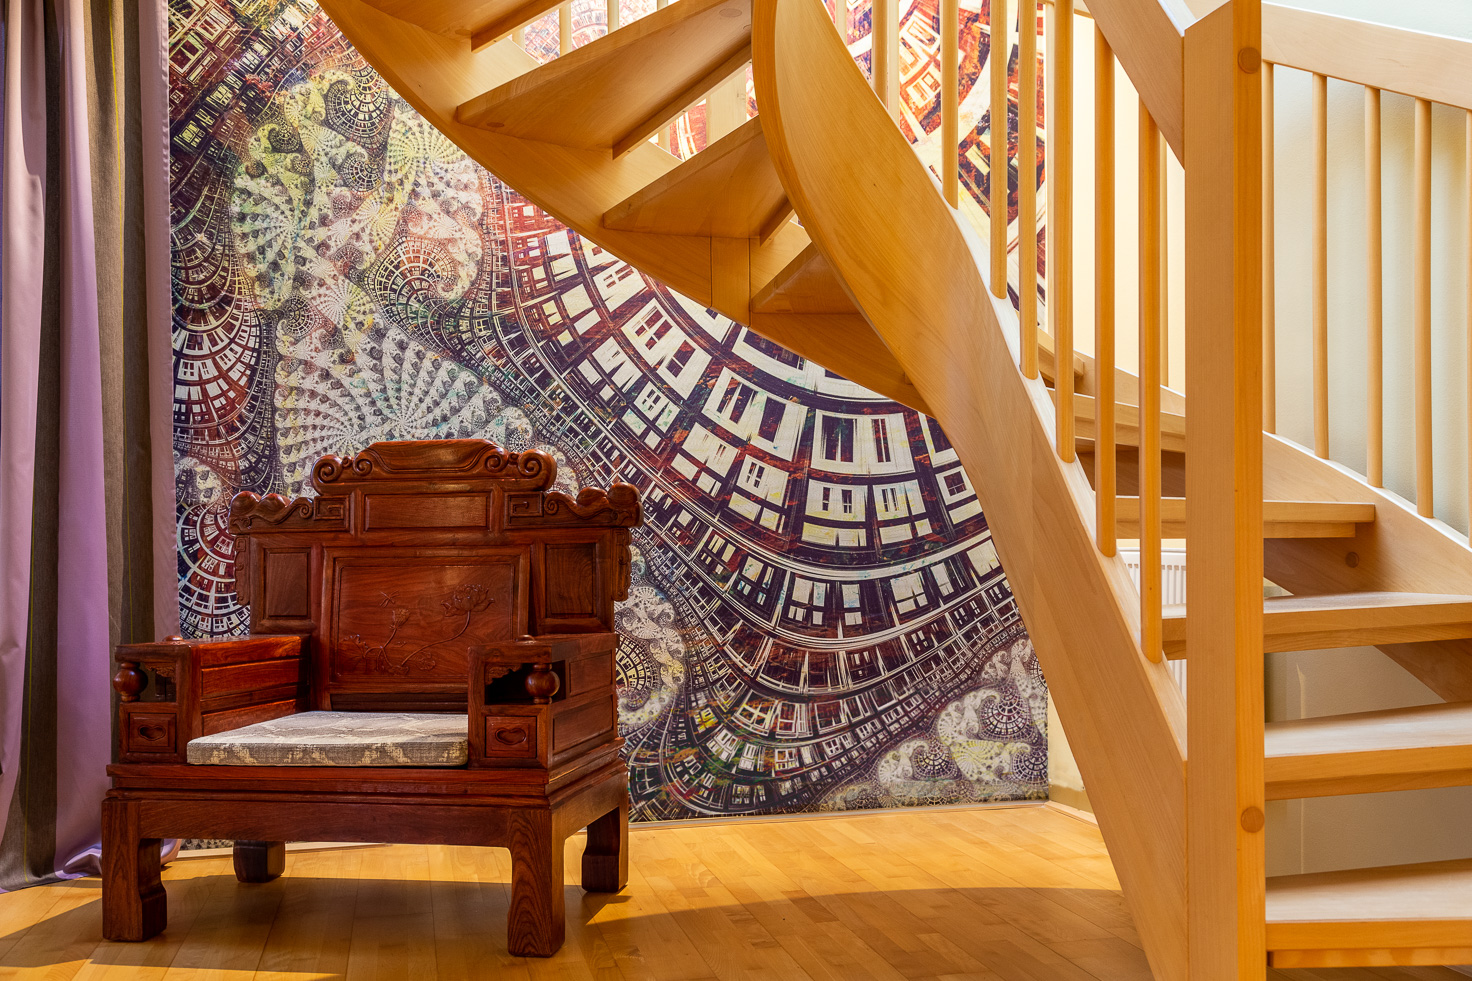 Treppenaufgang mit angepasster Tapete mit violettem Muster im Hintergrund, darunter asiatischer Thronsessel aus rot-braunem Holz.